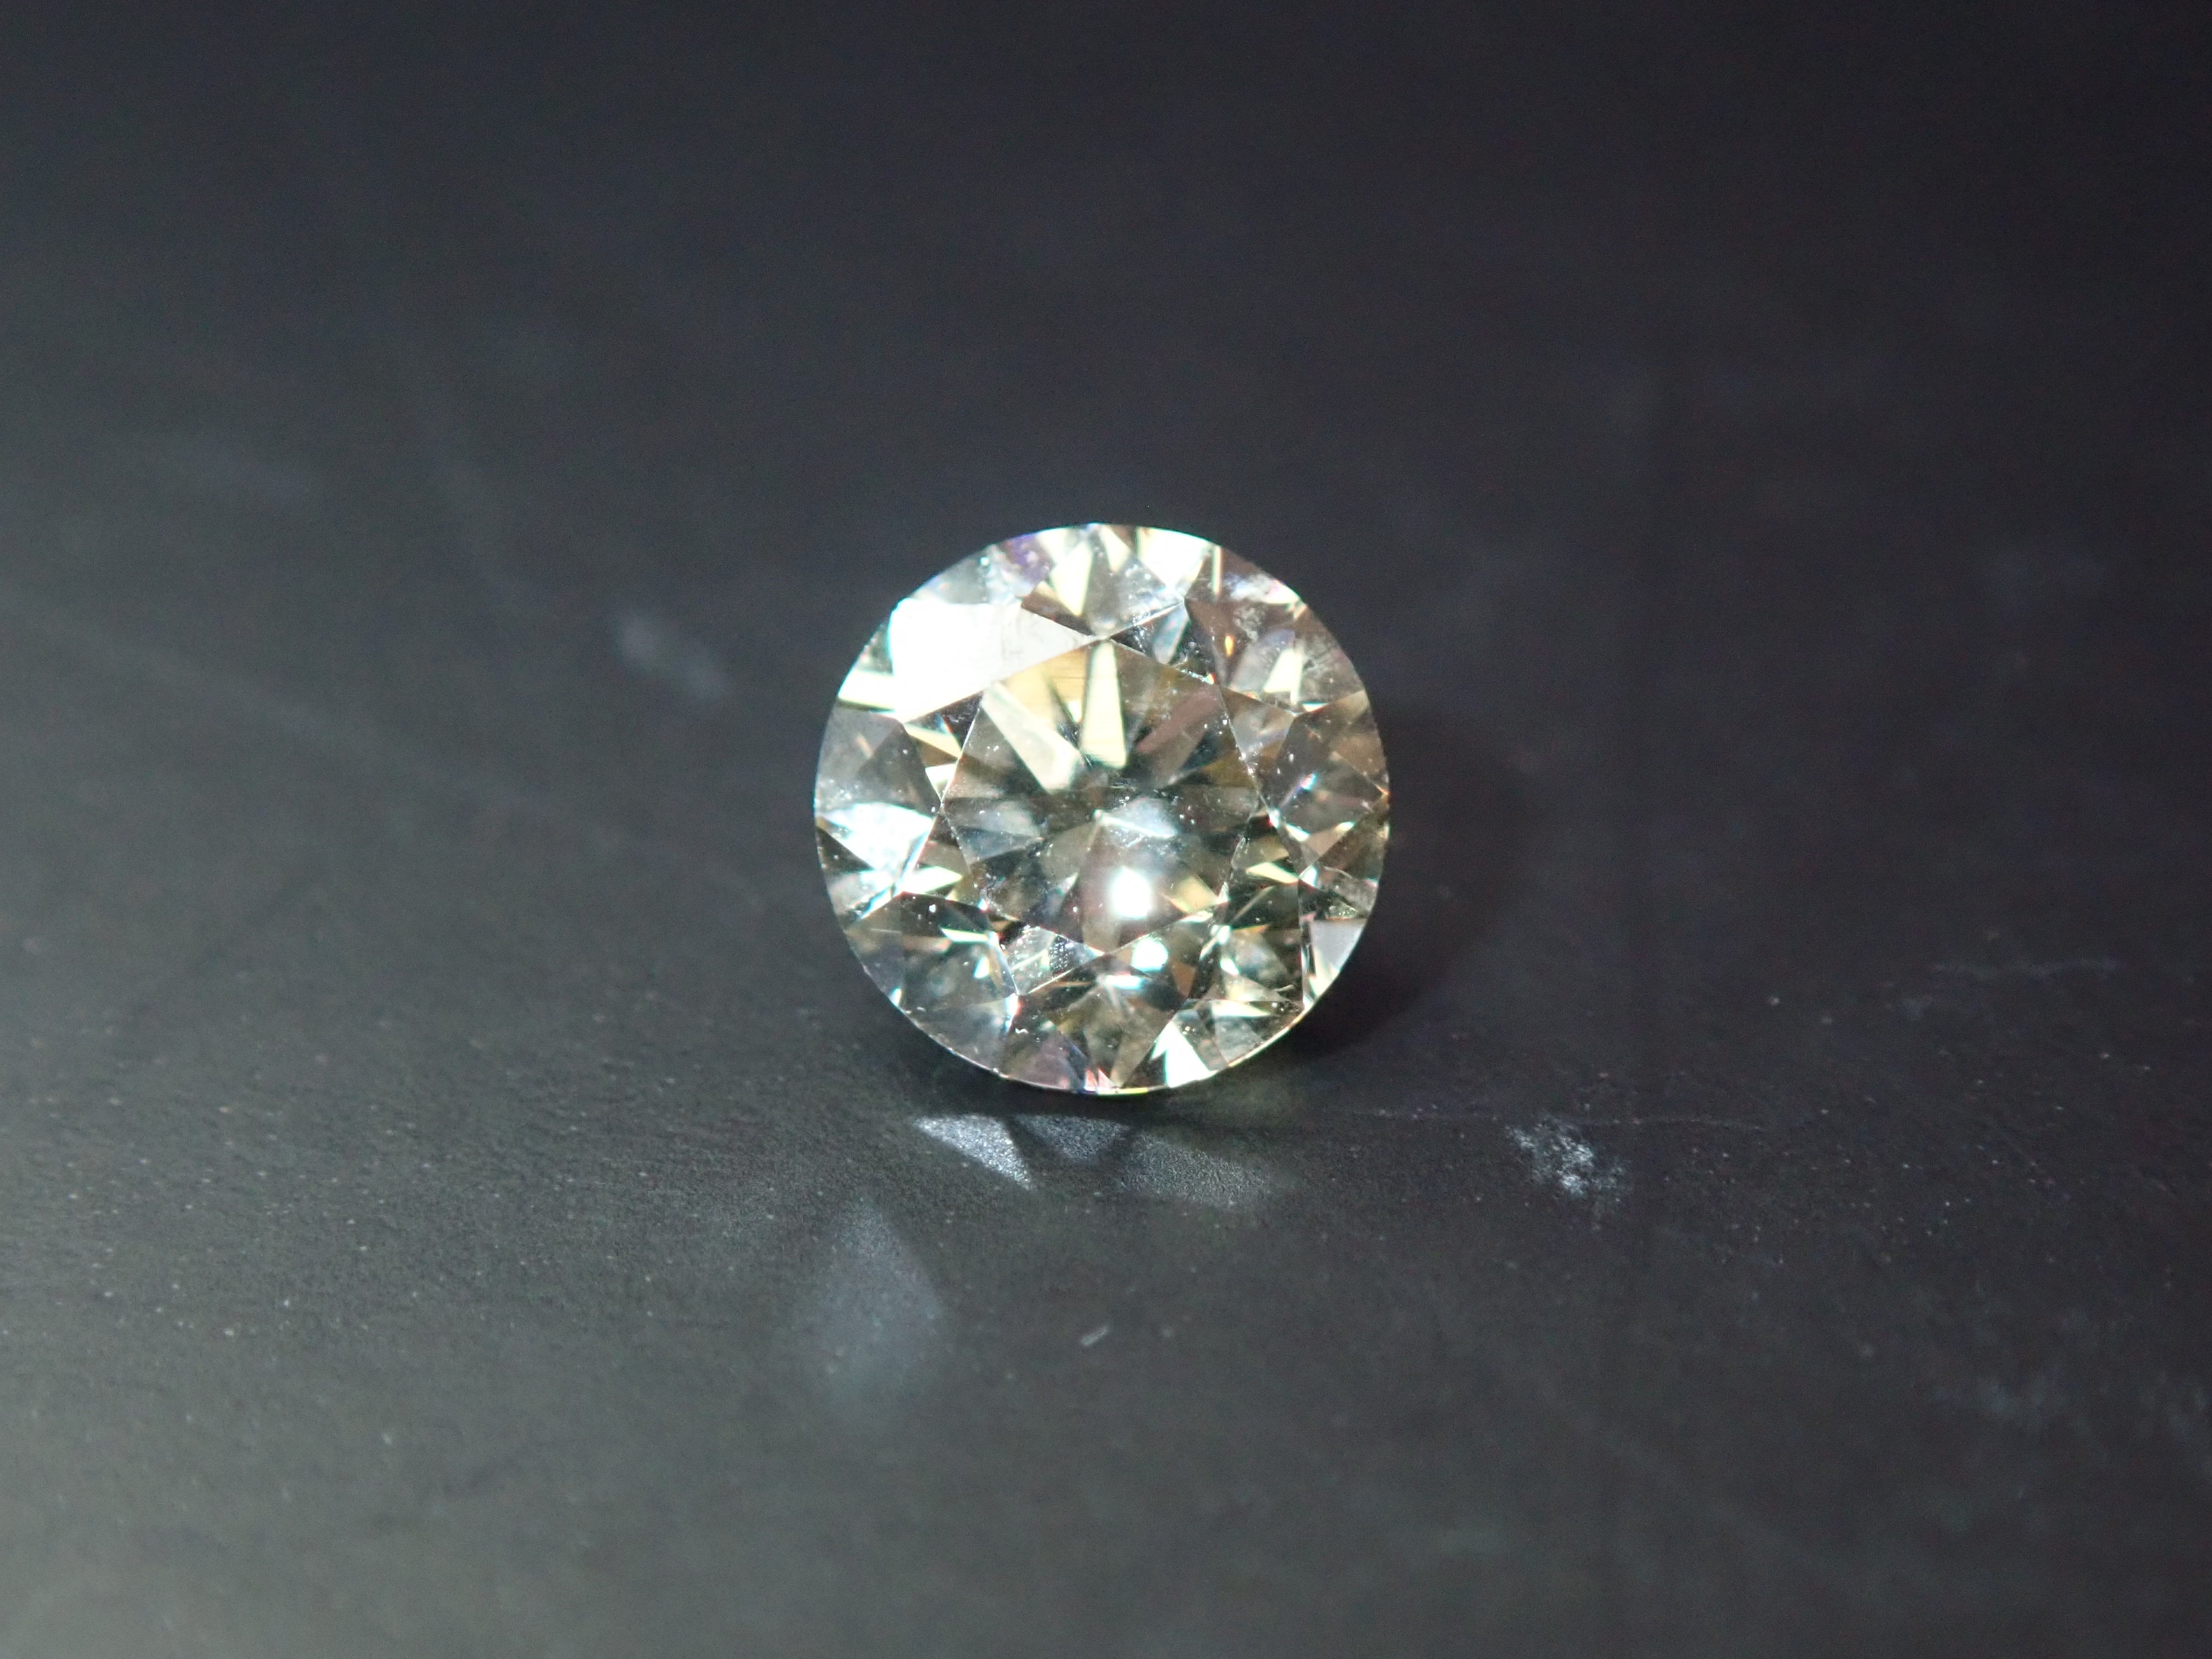 トップに03の刻印あります蛍光天然シャンパンブラウンダイヤモンド 0.3ct Pt999